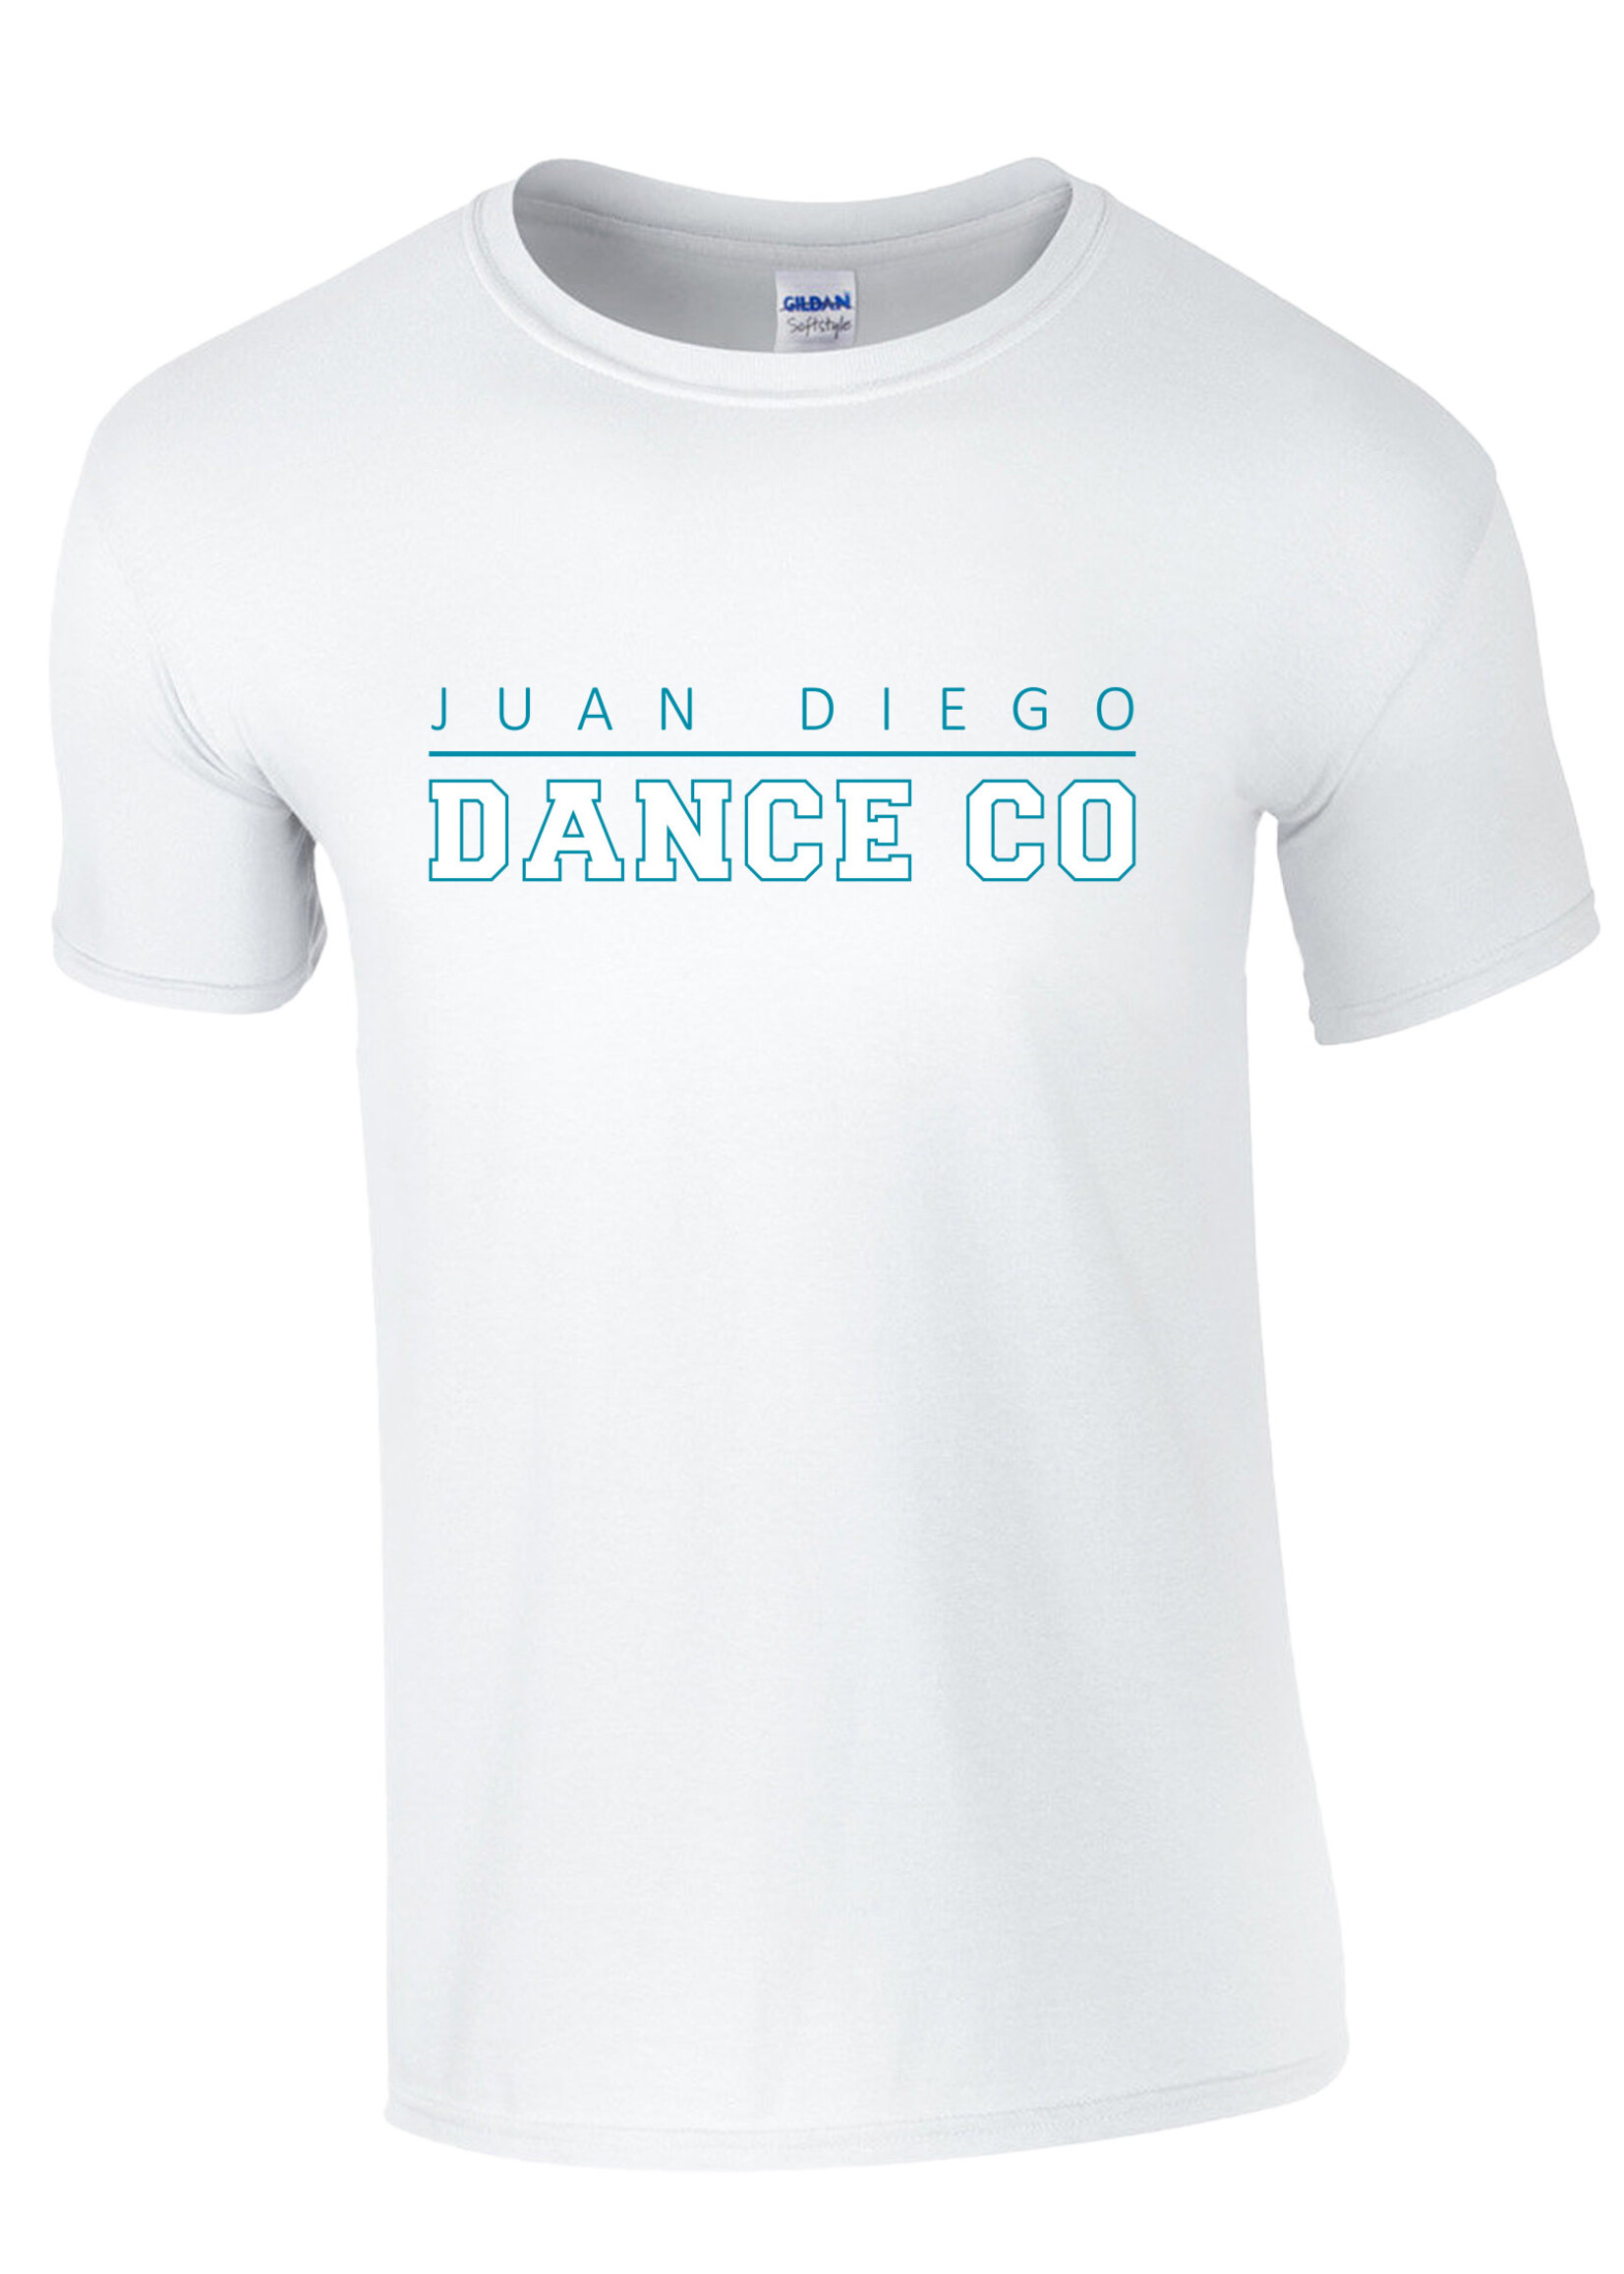 NON-UNIFORM Juan Diego Dance Company. Unisex s/s t-shirt